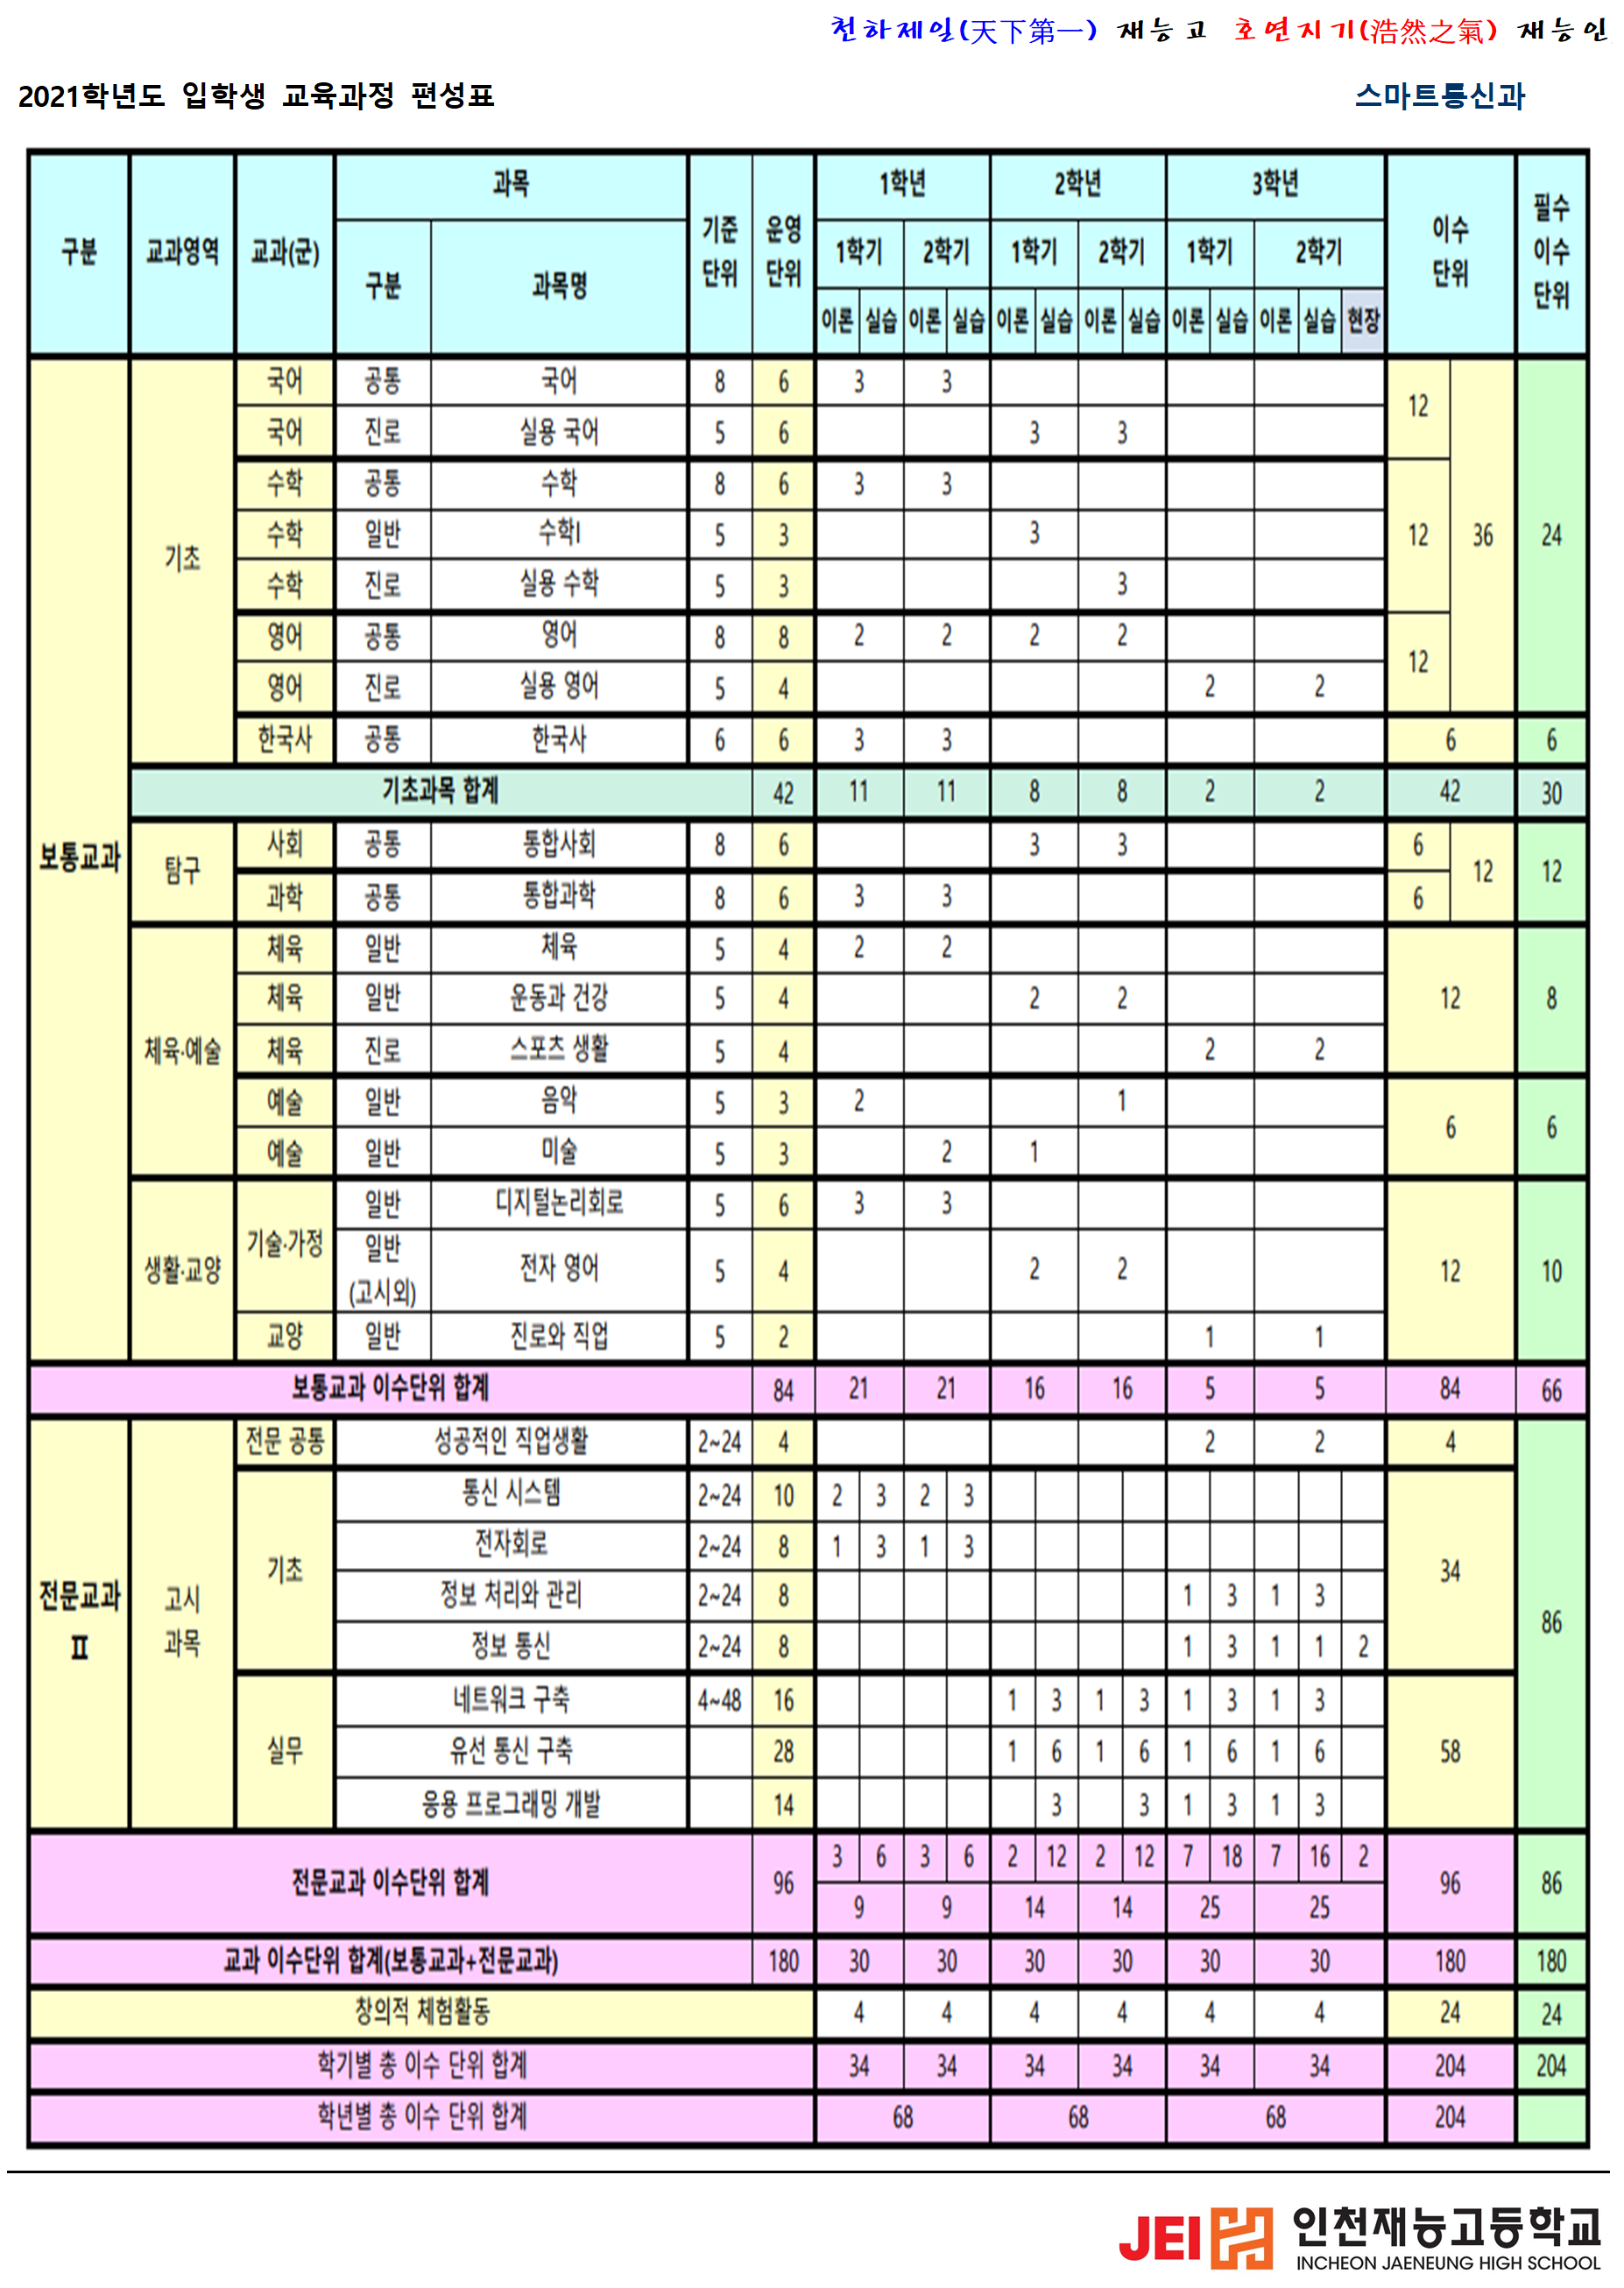 2017학년도 입학생 교육과정 편성표